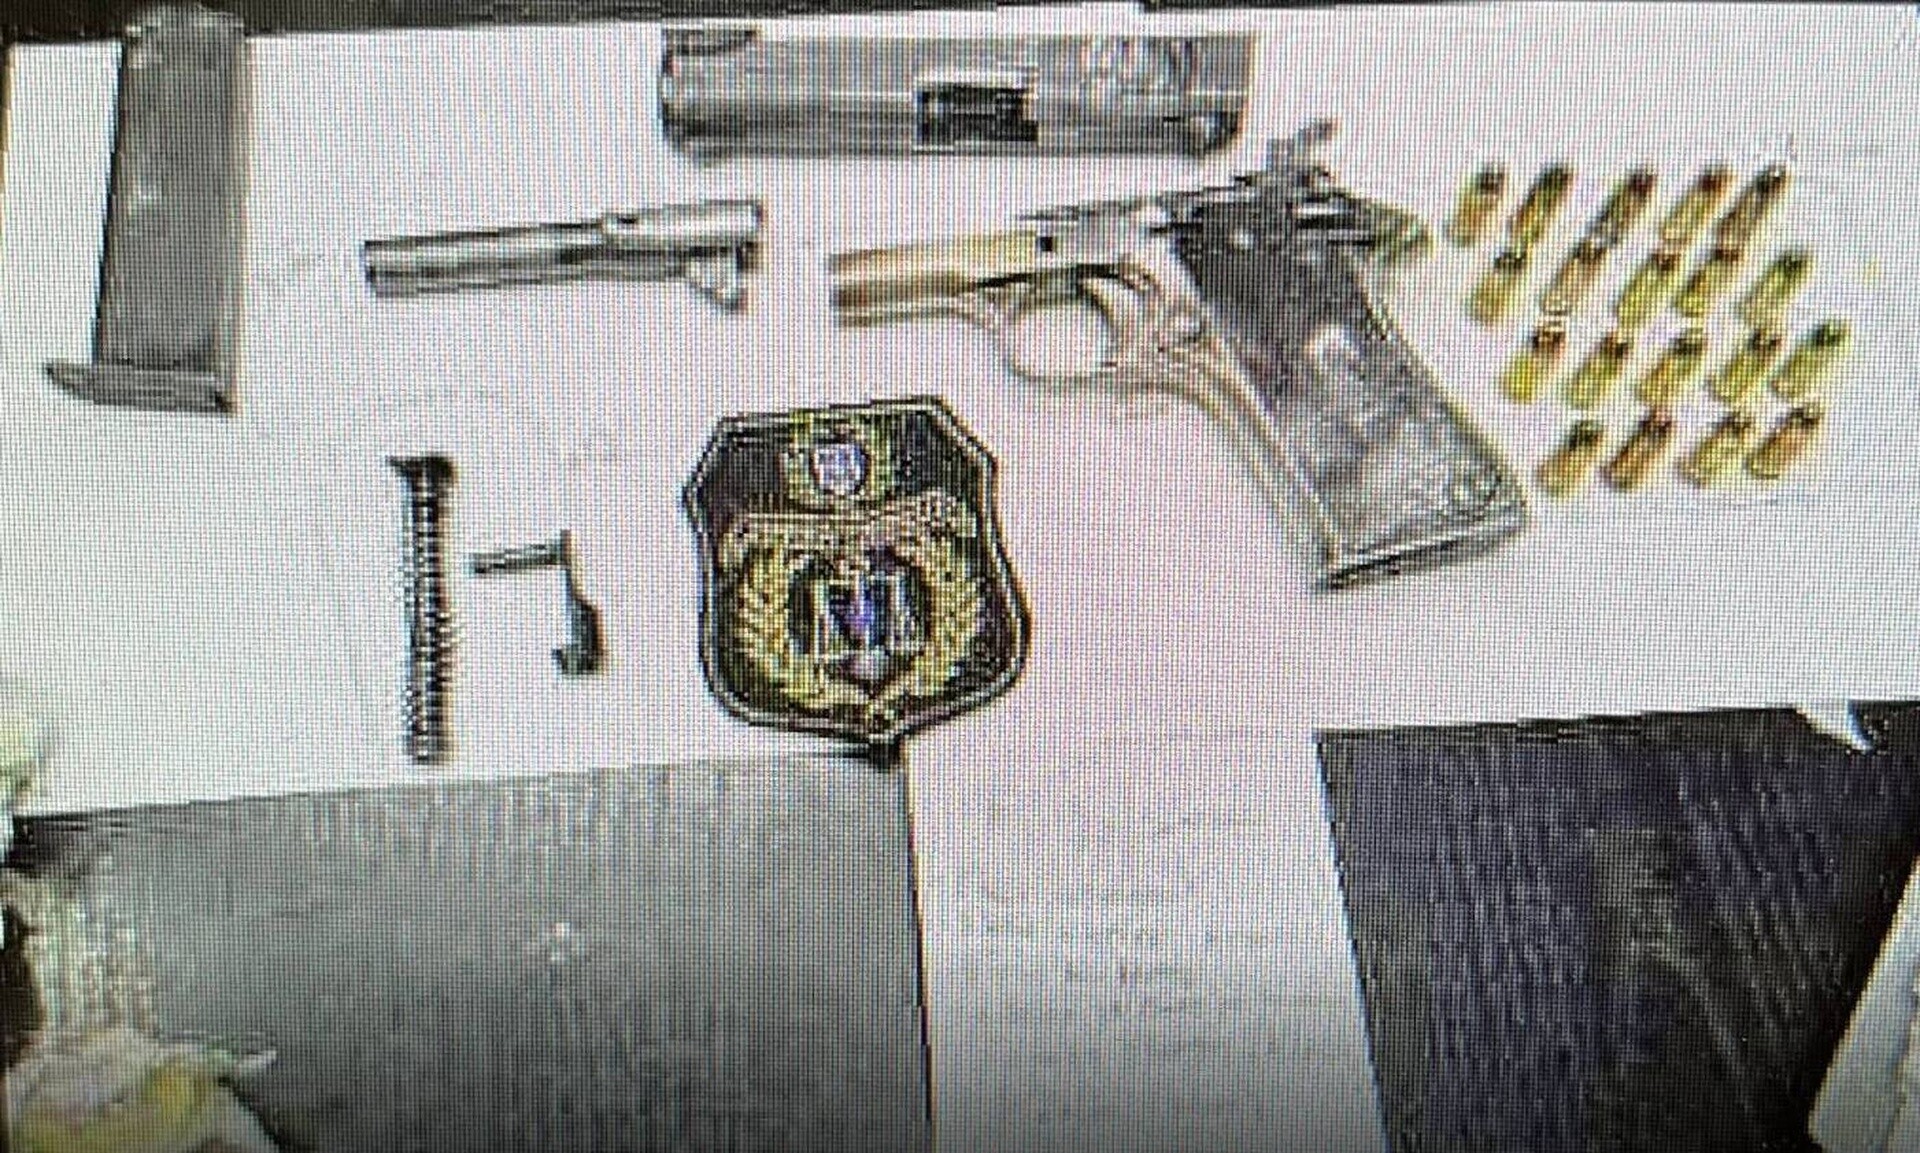 Αναζητείται ο «ιδιοκτήτης» του όπλου που βρέθηκε «χτισμένο» στον τοίχο κελιού στον Κορυδαλλό